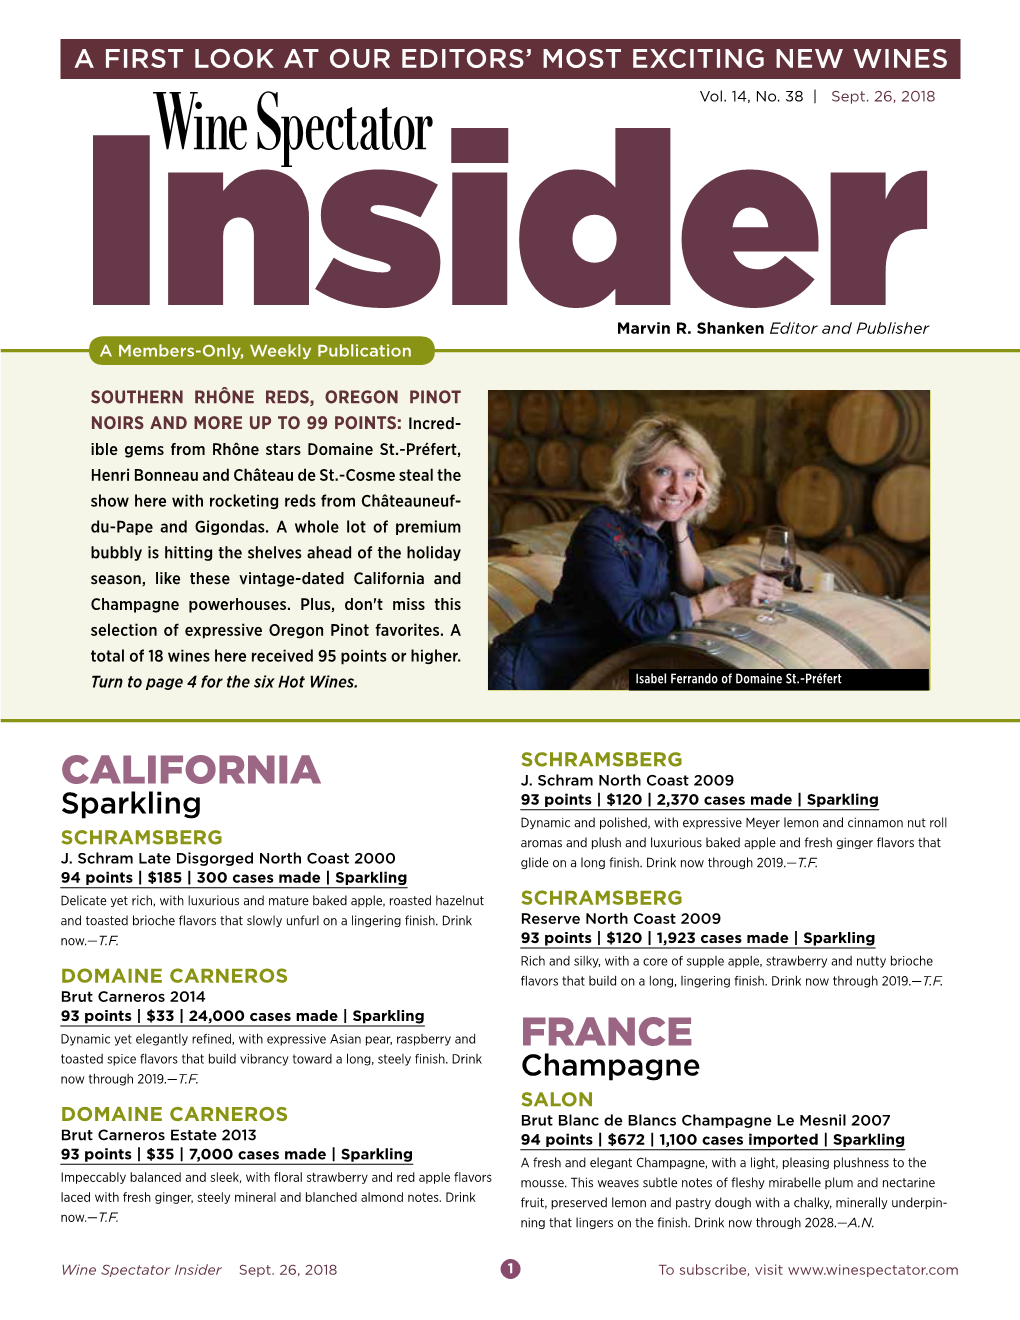 Wine Spectator Insider Sept